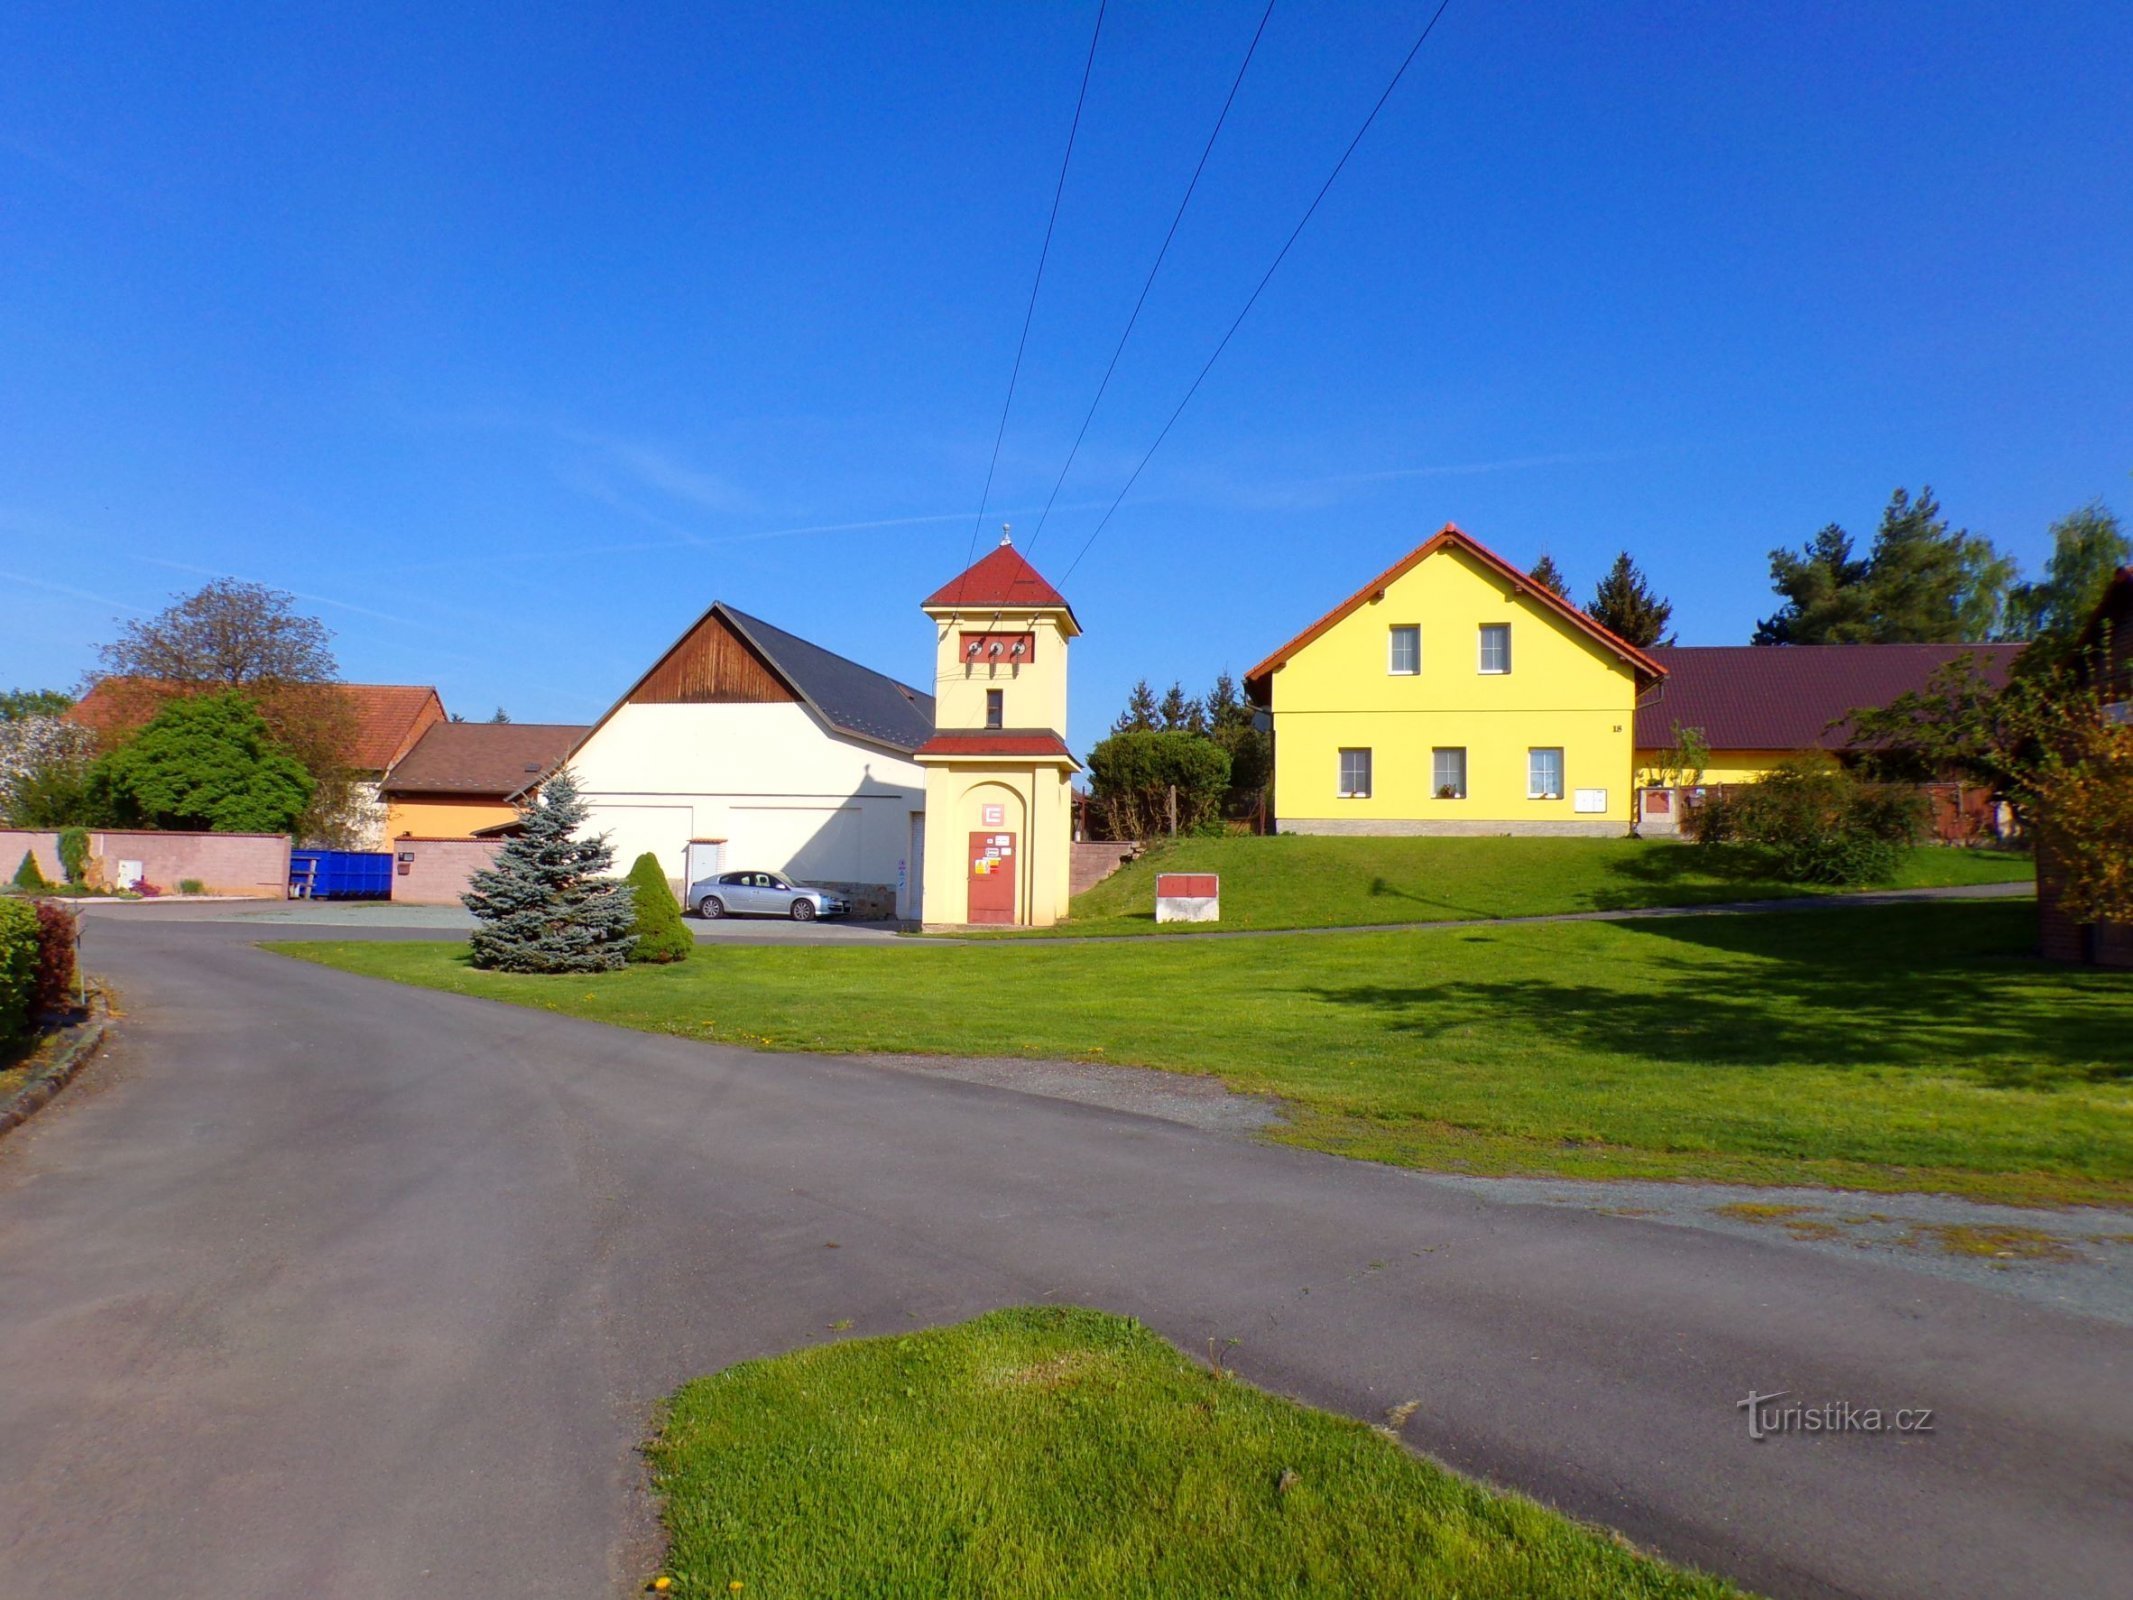 Parte da aldeia (Čáslavky, 8.5.2022 de maio de XNUMX)